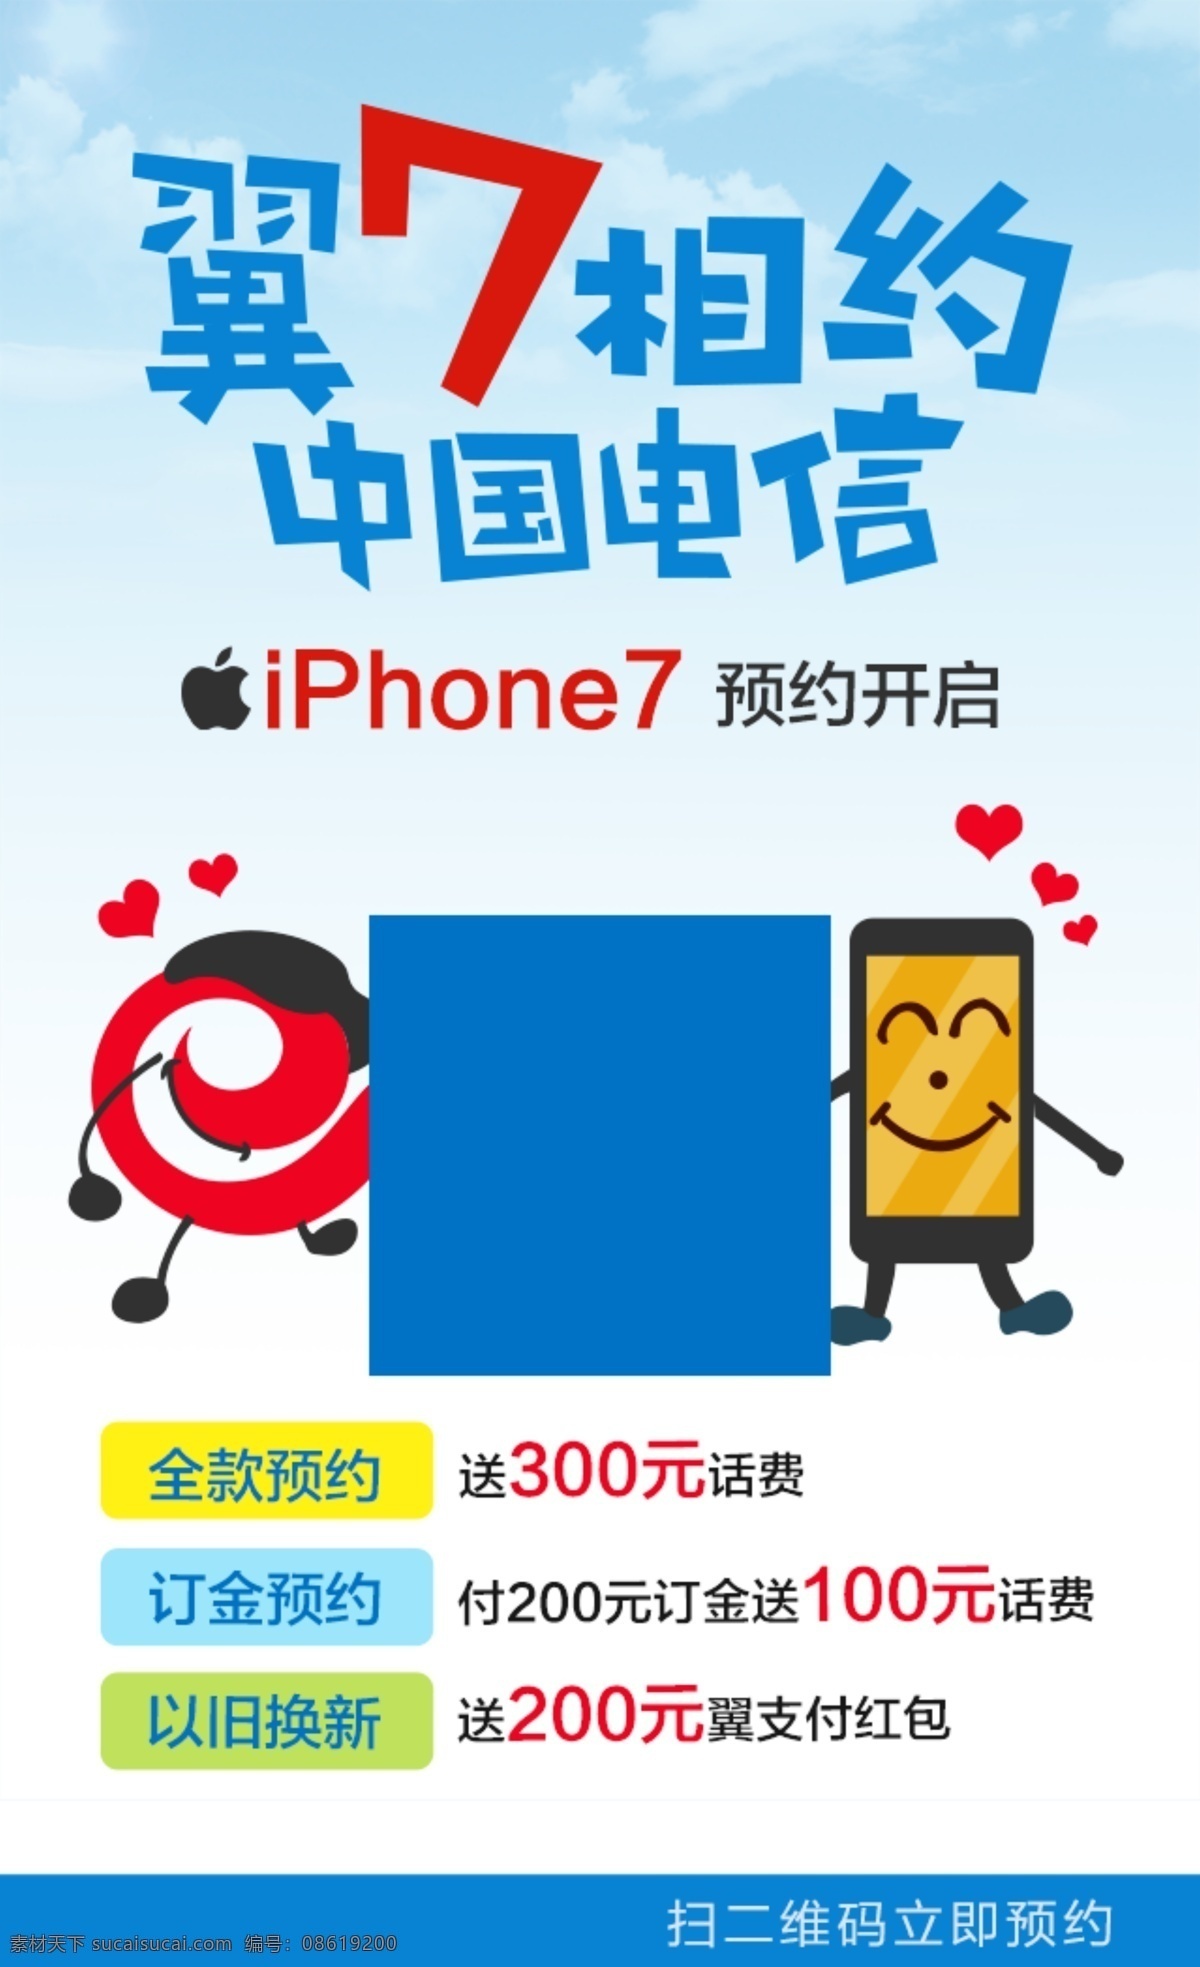 卡通版本 苹果 iphone7 预约 活动页 海报